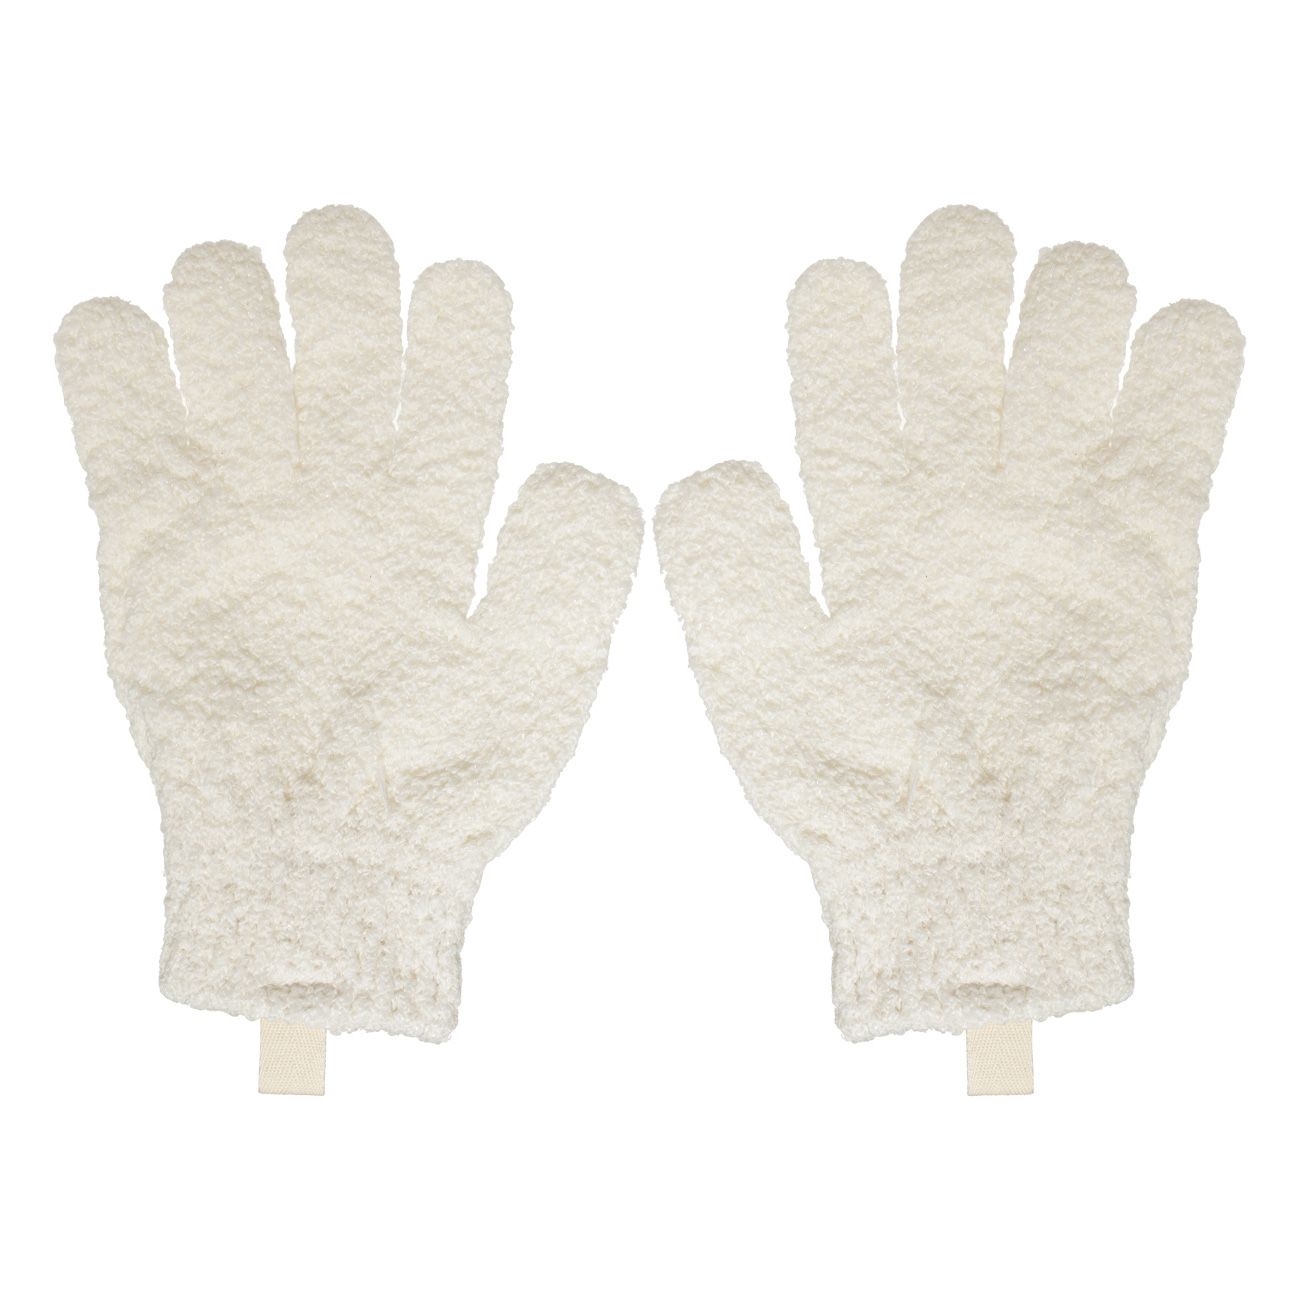 Перчатка для мытья тела Kuchenland отшелушивающая, полиэстер, молочная, 21 см, 2 шт пряжа samba 100% полиэстер 150м 100гр 04 бежевый